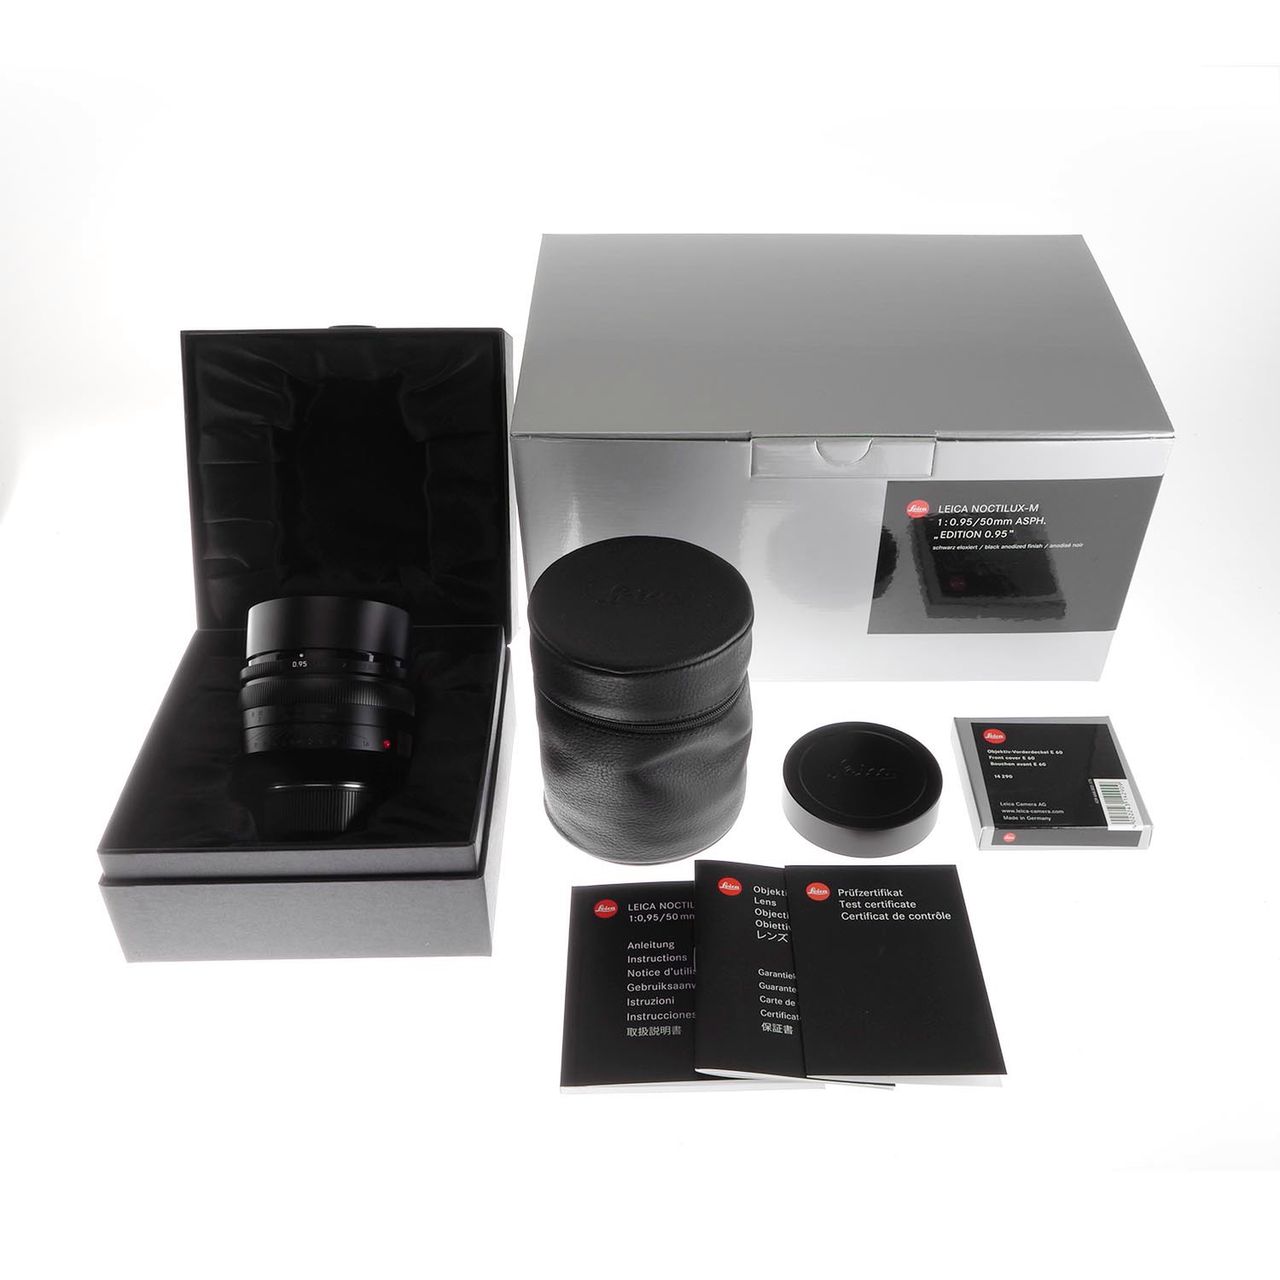 Prototyp szkła Leica Noctilux-M 50 mm Edition 0.95 może być wasz za 25 tysięcy dolarów